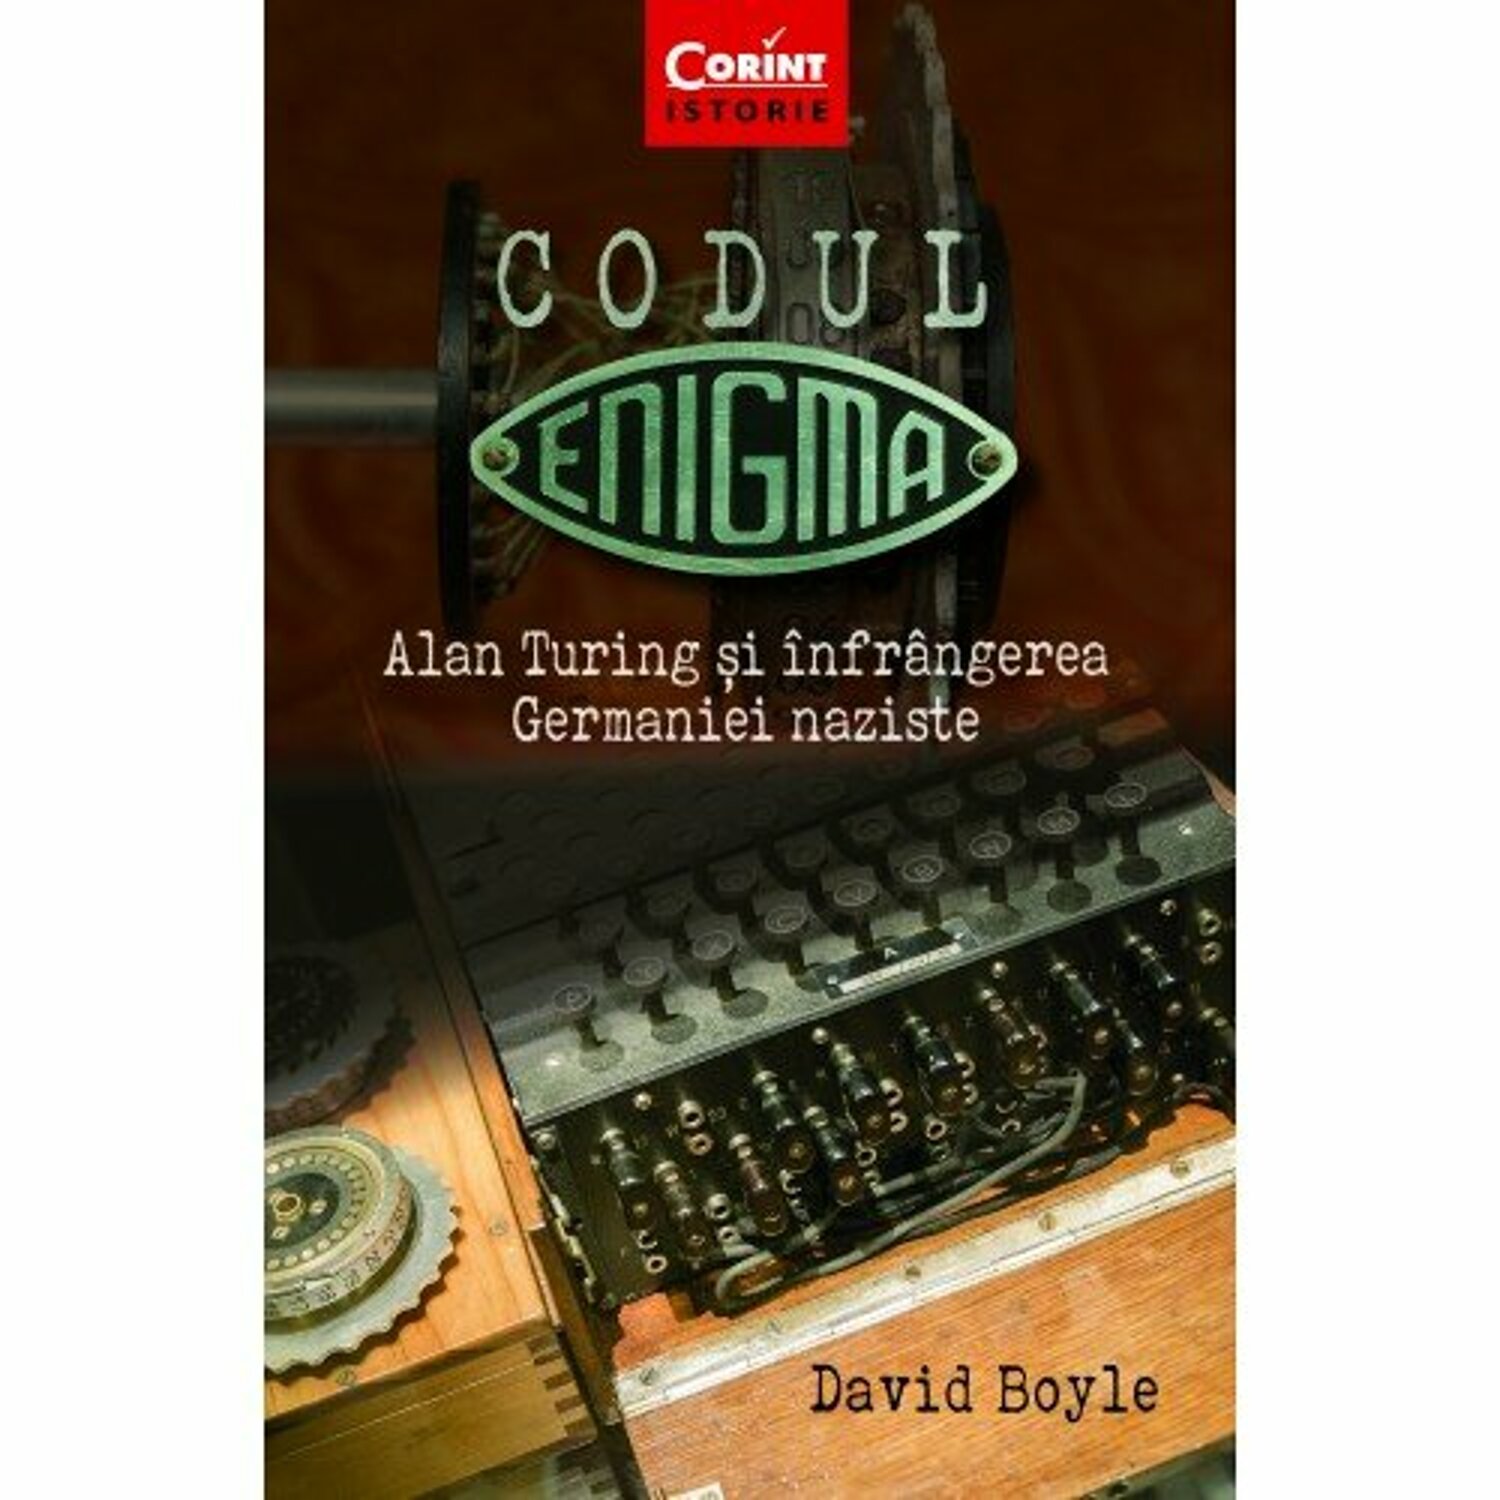 Codul Enigma